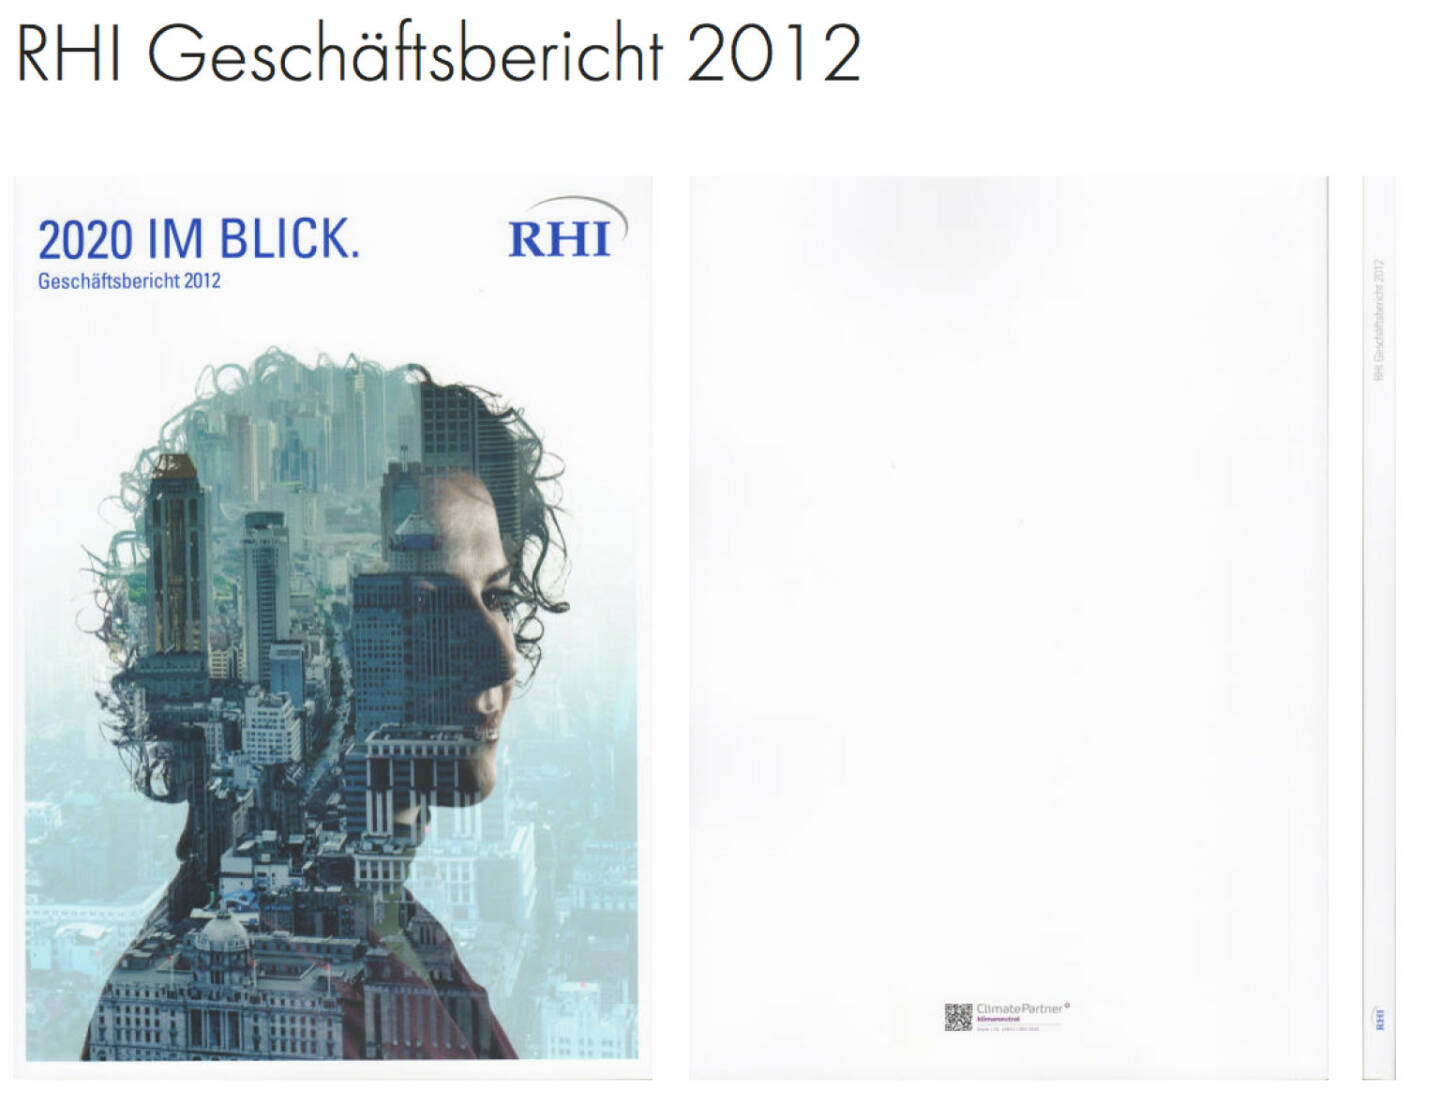 RHI Geschäftsbericht 2012 http://josefchladek.com/companyreport/rhi_geschaftsbericht_2012